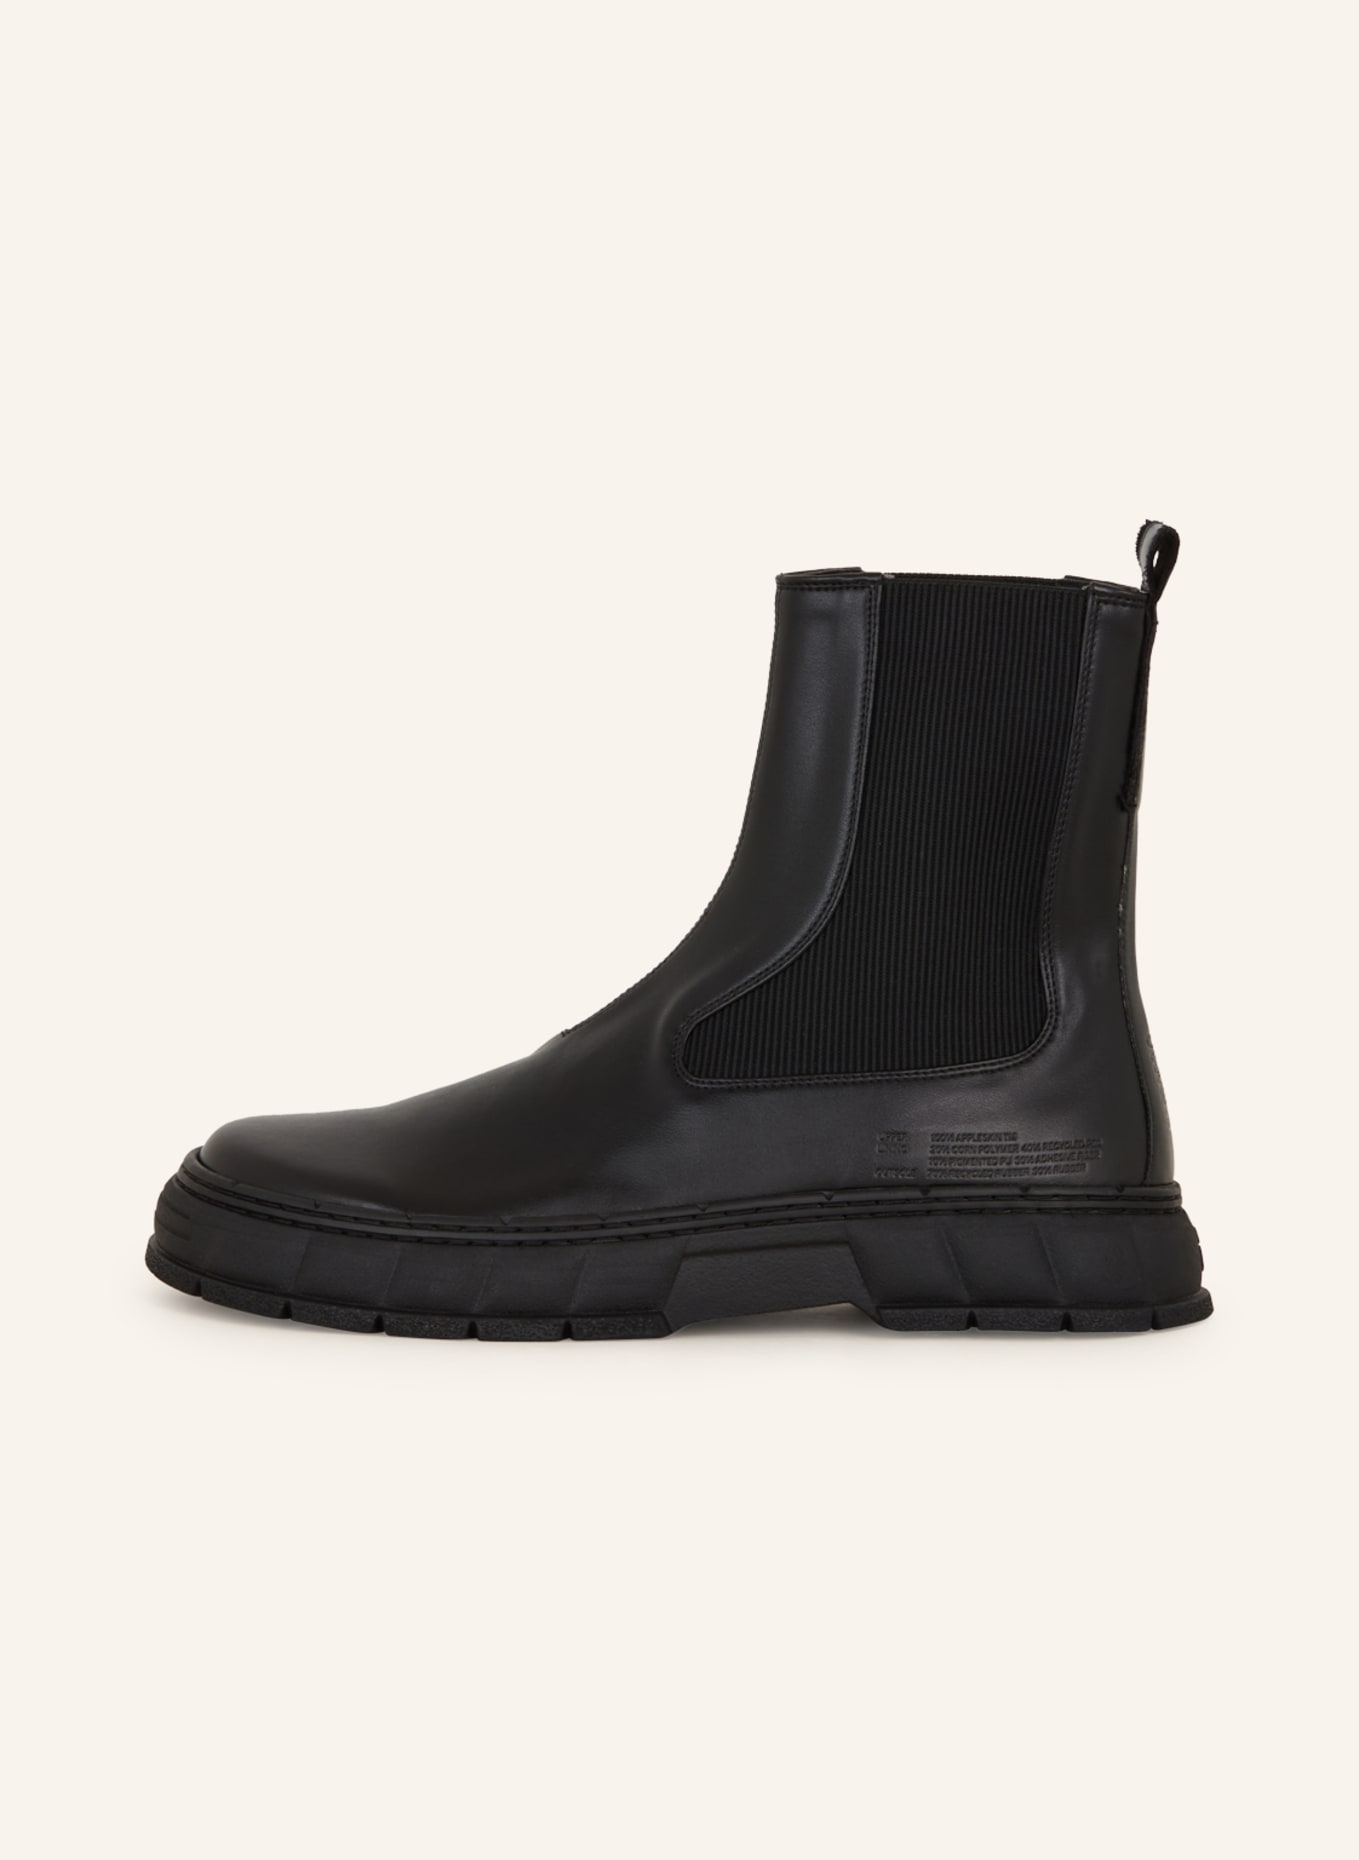 VIRÒN  boots 1997, Color: BLACK (Image 4)